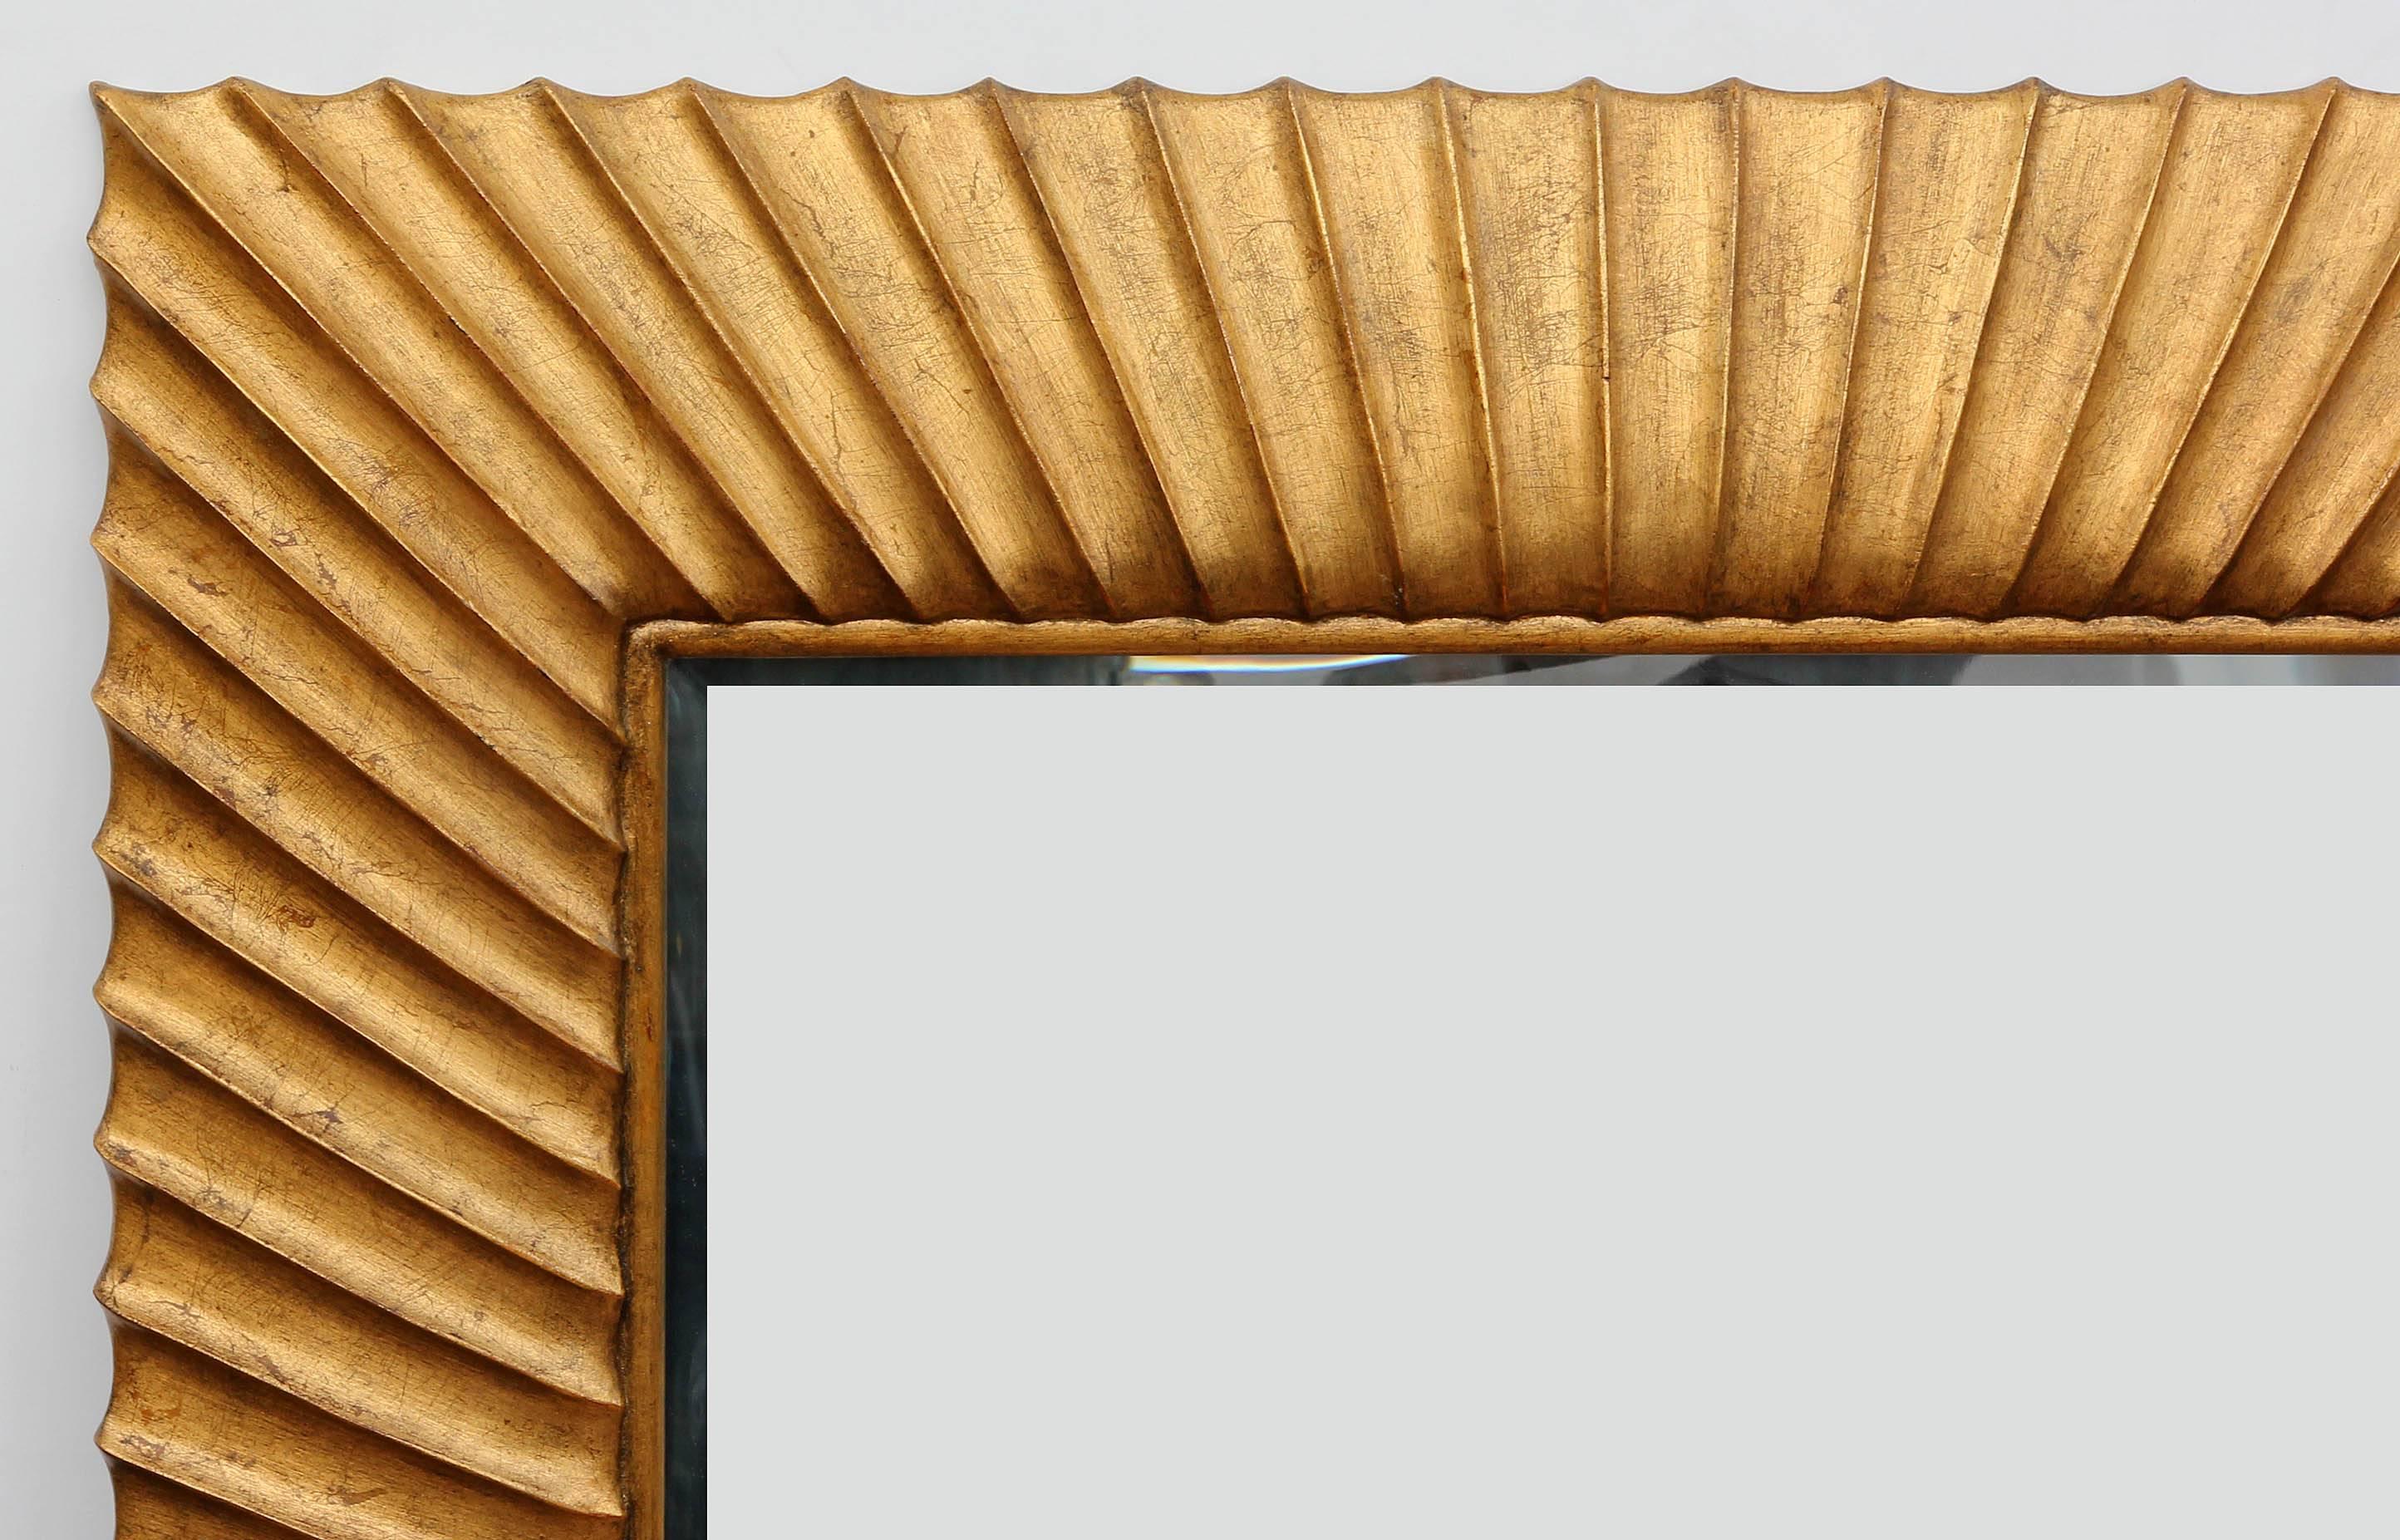 Miroir moderne en bois doré sculpté conçu par Christopher Guy Harrison de Harrison & Gil. Excellente qualité avec une sculpture robuste. Miroir biseauté. Voir nos autres miroirs. Veuillez nous contacter pour connaître les options